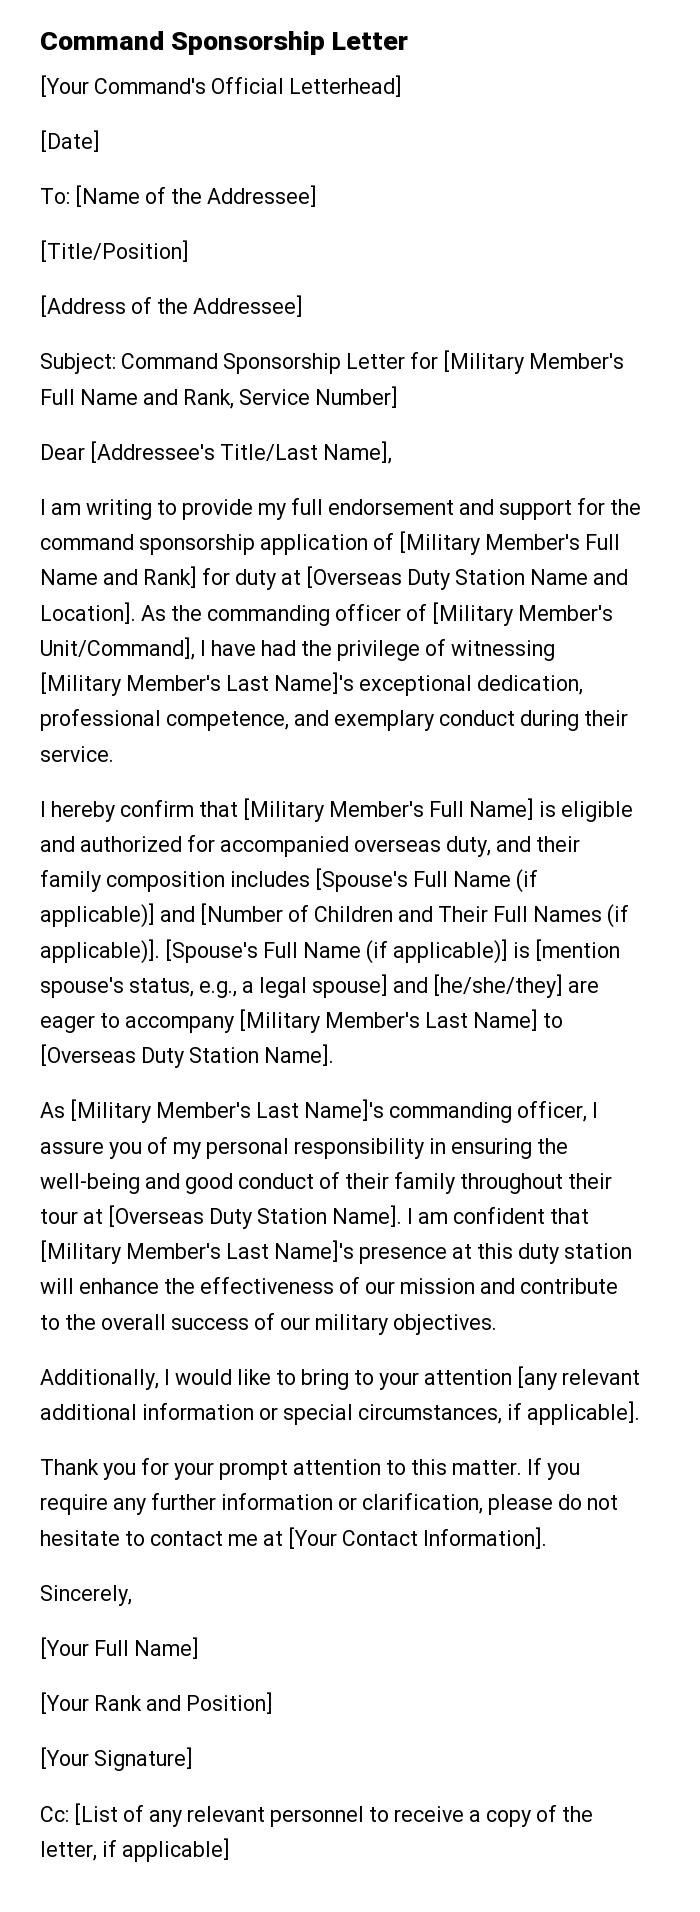 Command Sponsorship Letter